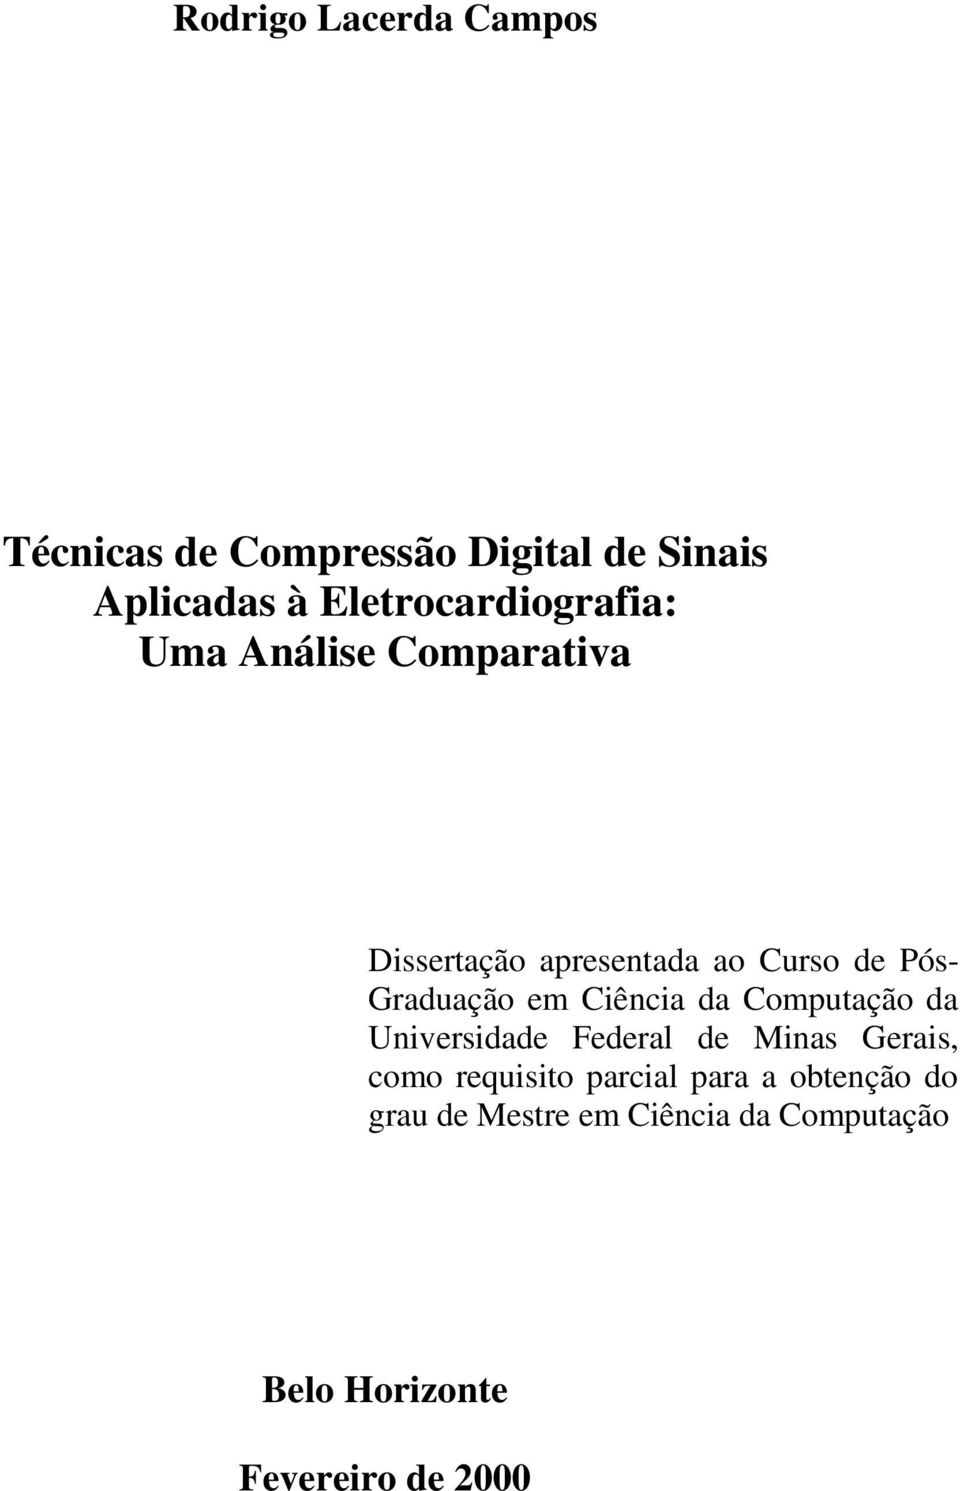 Graduação em Ciência da Computação da Universidade Federal de Minas Gerais, como